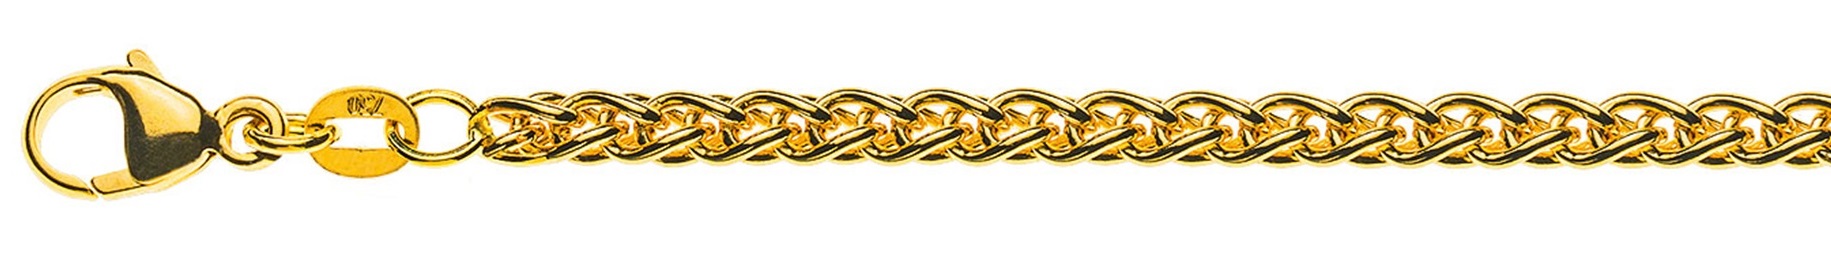 AURONOS Prestige Halskette Gelbgold 18K Zopfkette 55cm 3.3mm